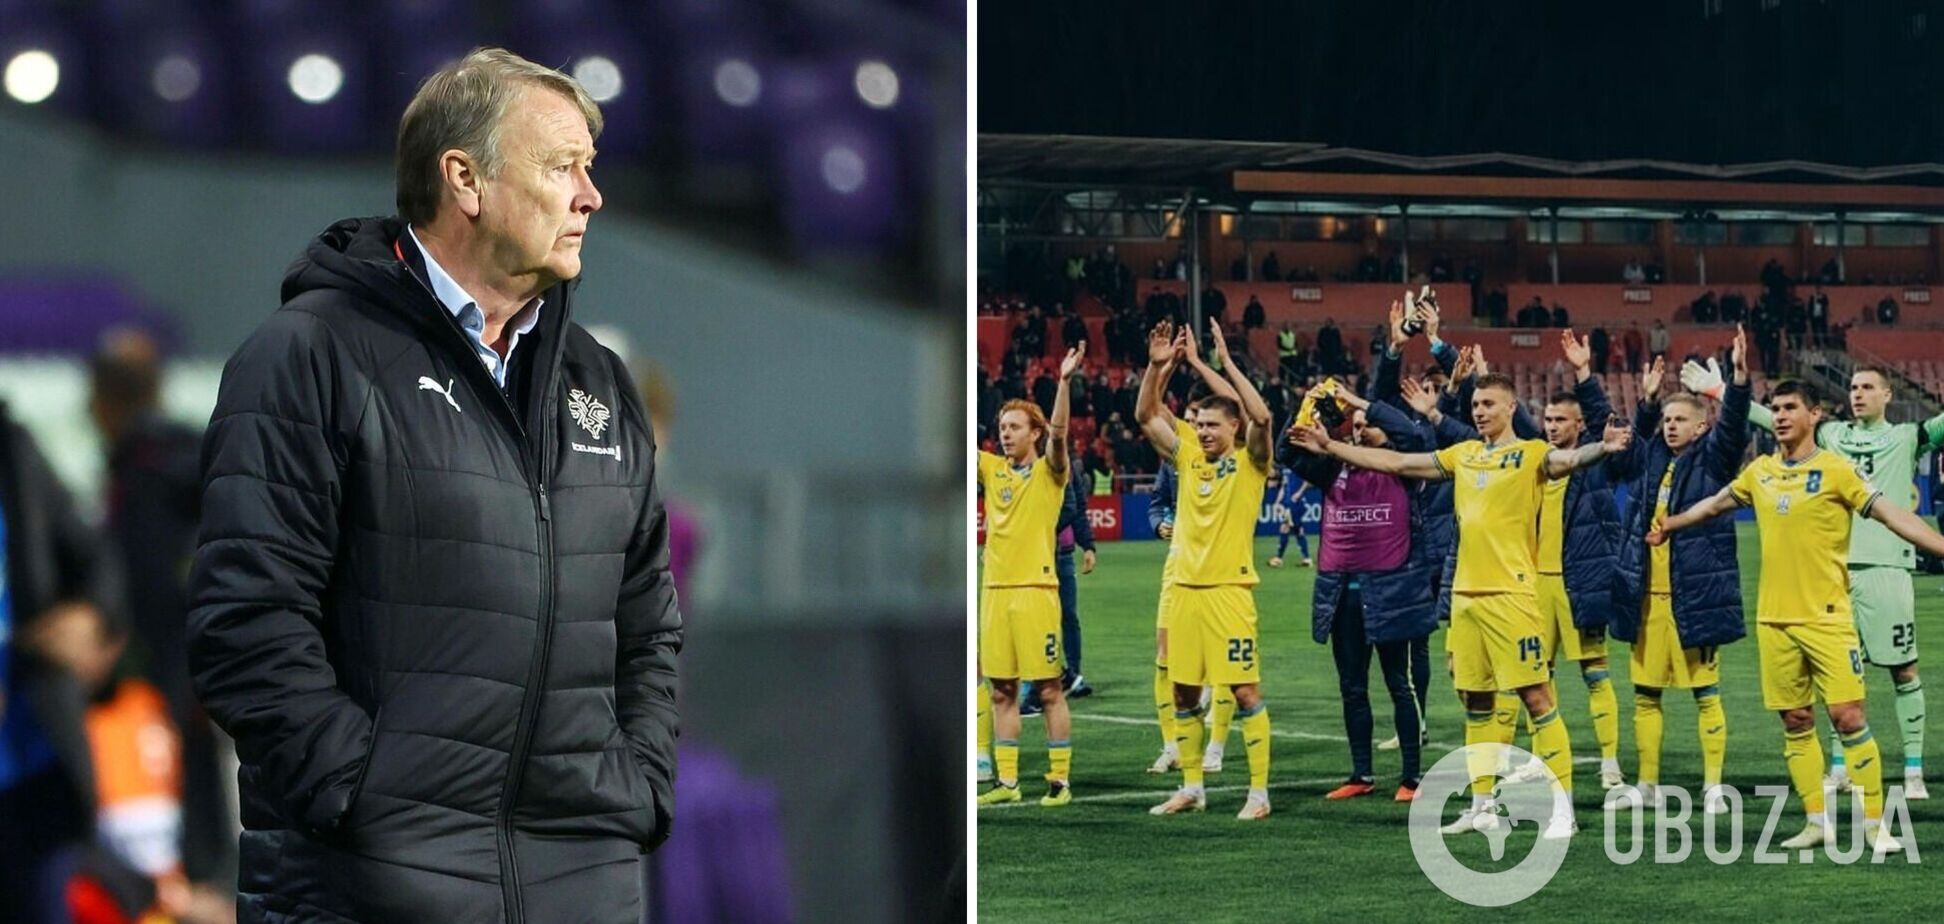 'Може бути на нашу користь': тренер Ісландії висловився про матч з Україною